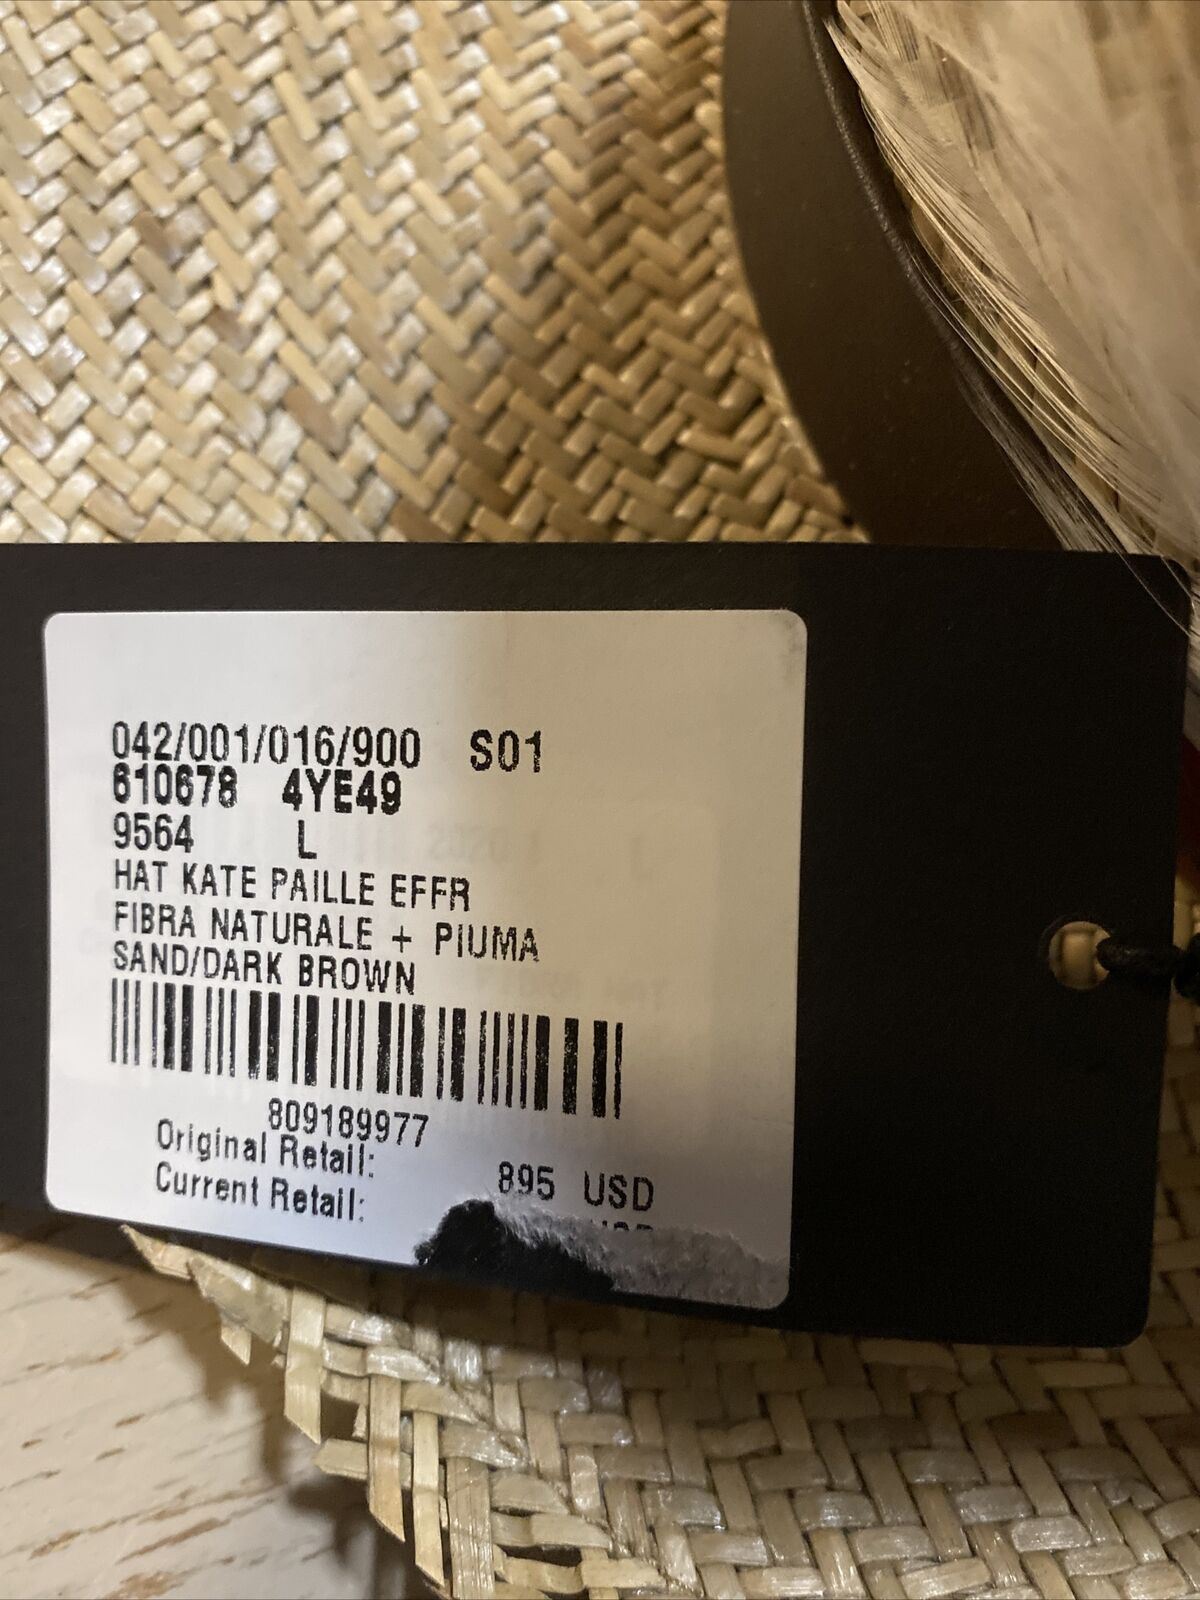 NWT 895 долларов США Соломенная ковбойская шляпа Saint Laurent с кожей и перьями Коричневая L